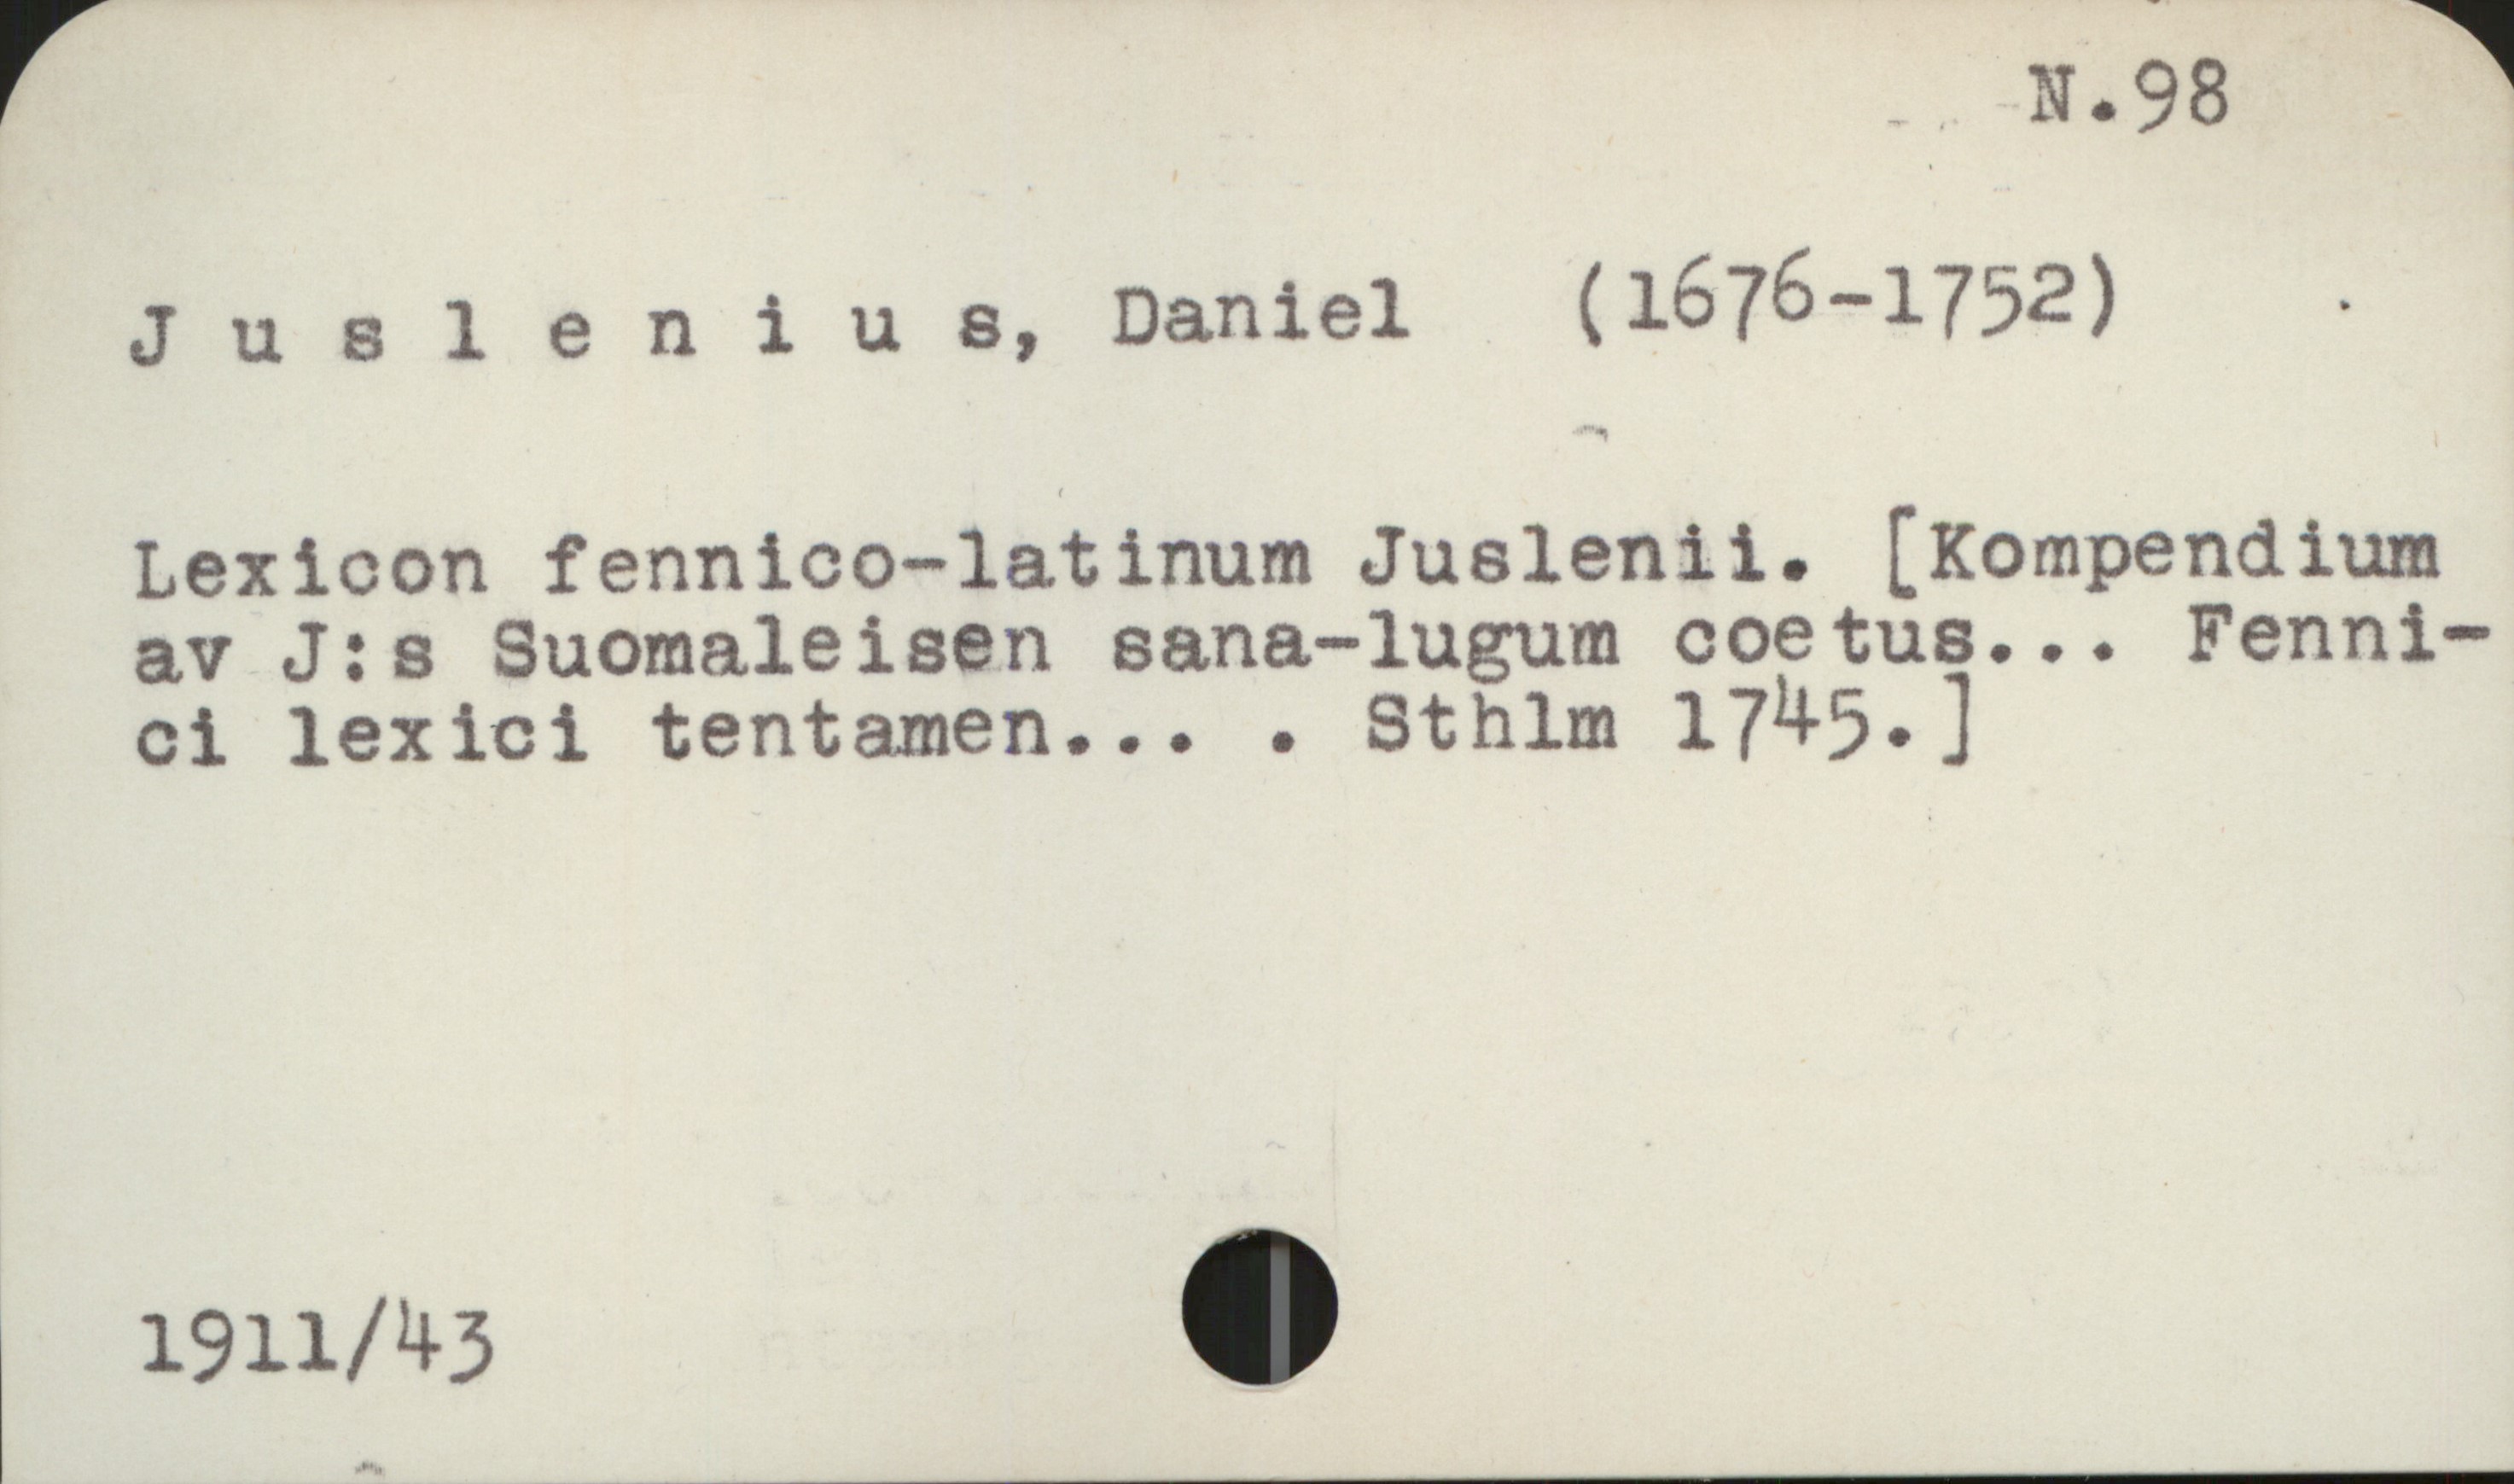 Juslenius, Daniel (1676-1752) N 98

Juslenius, Daniel (1676-1752)

Lexicon fennico-latinum Juslenii. [Kompendium
av J:s Suomaleisen sana-lugum coetus... Fennici 
lexici tentamen... . Sthlm 1745. ]







Acc. 1911/43